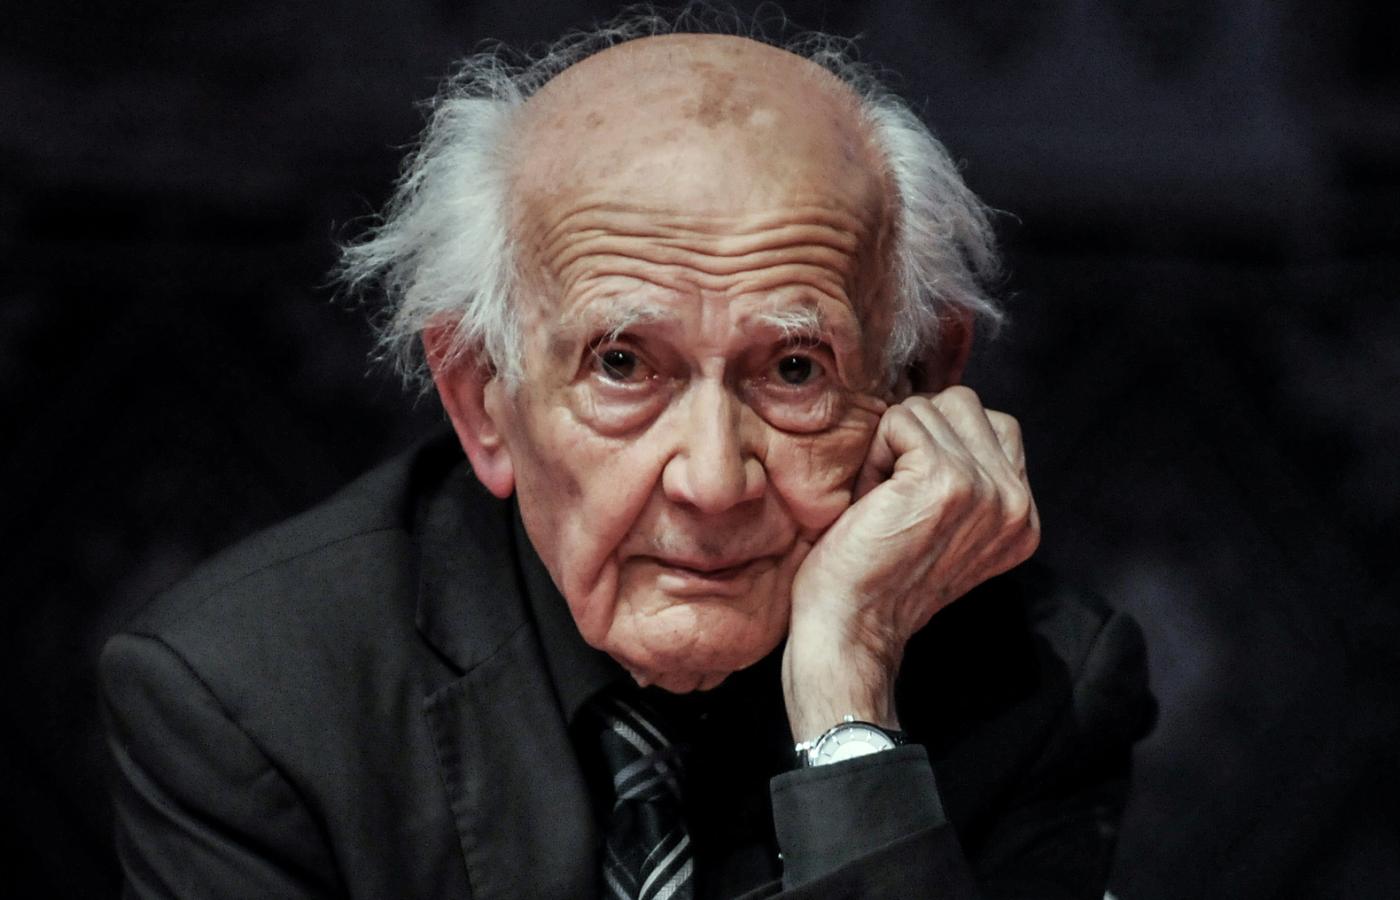 Od momentu przejścia na emeryturę w 1990 r. Zygmunt Bauman napisał 40 książek.